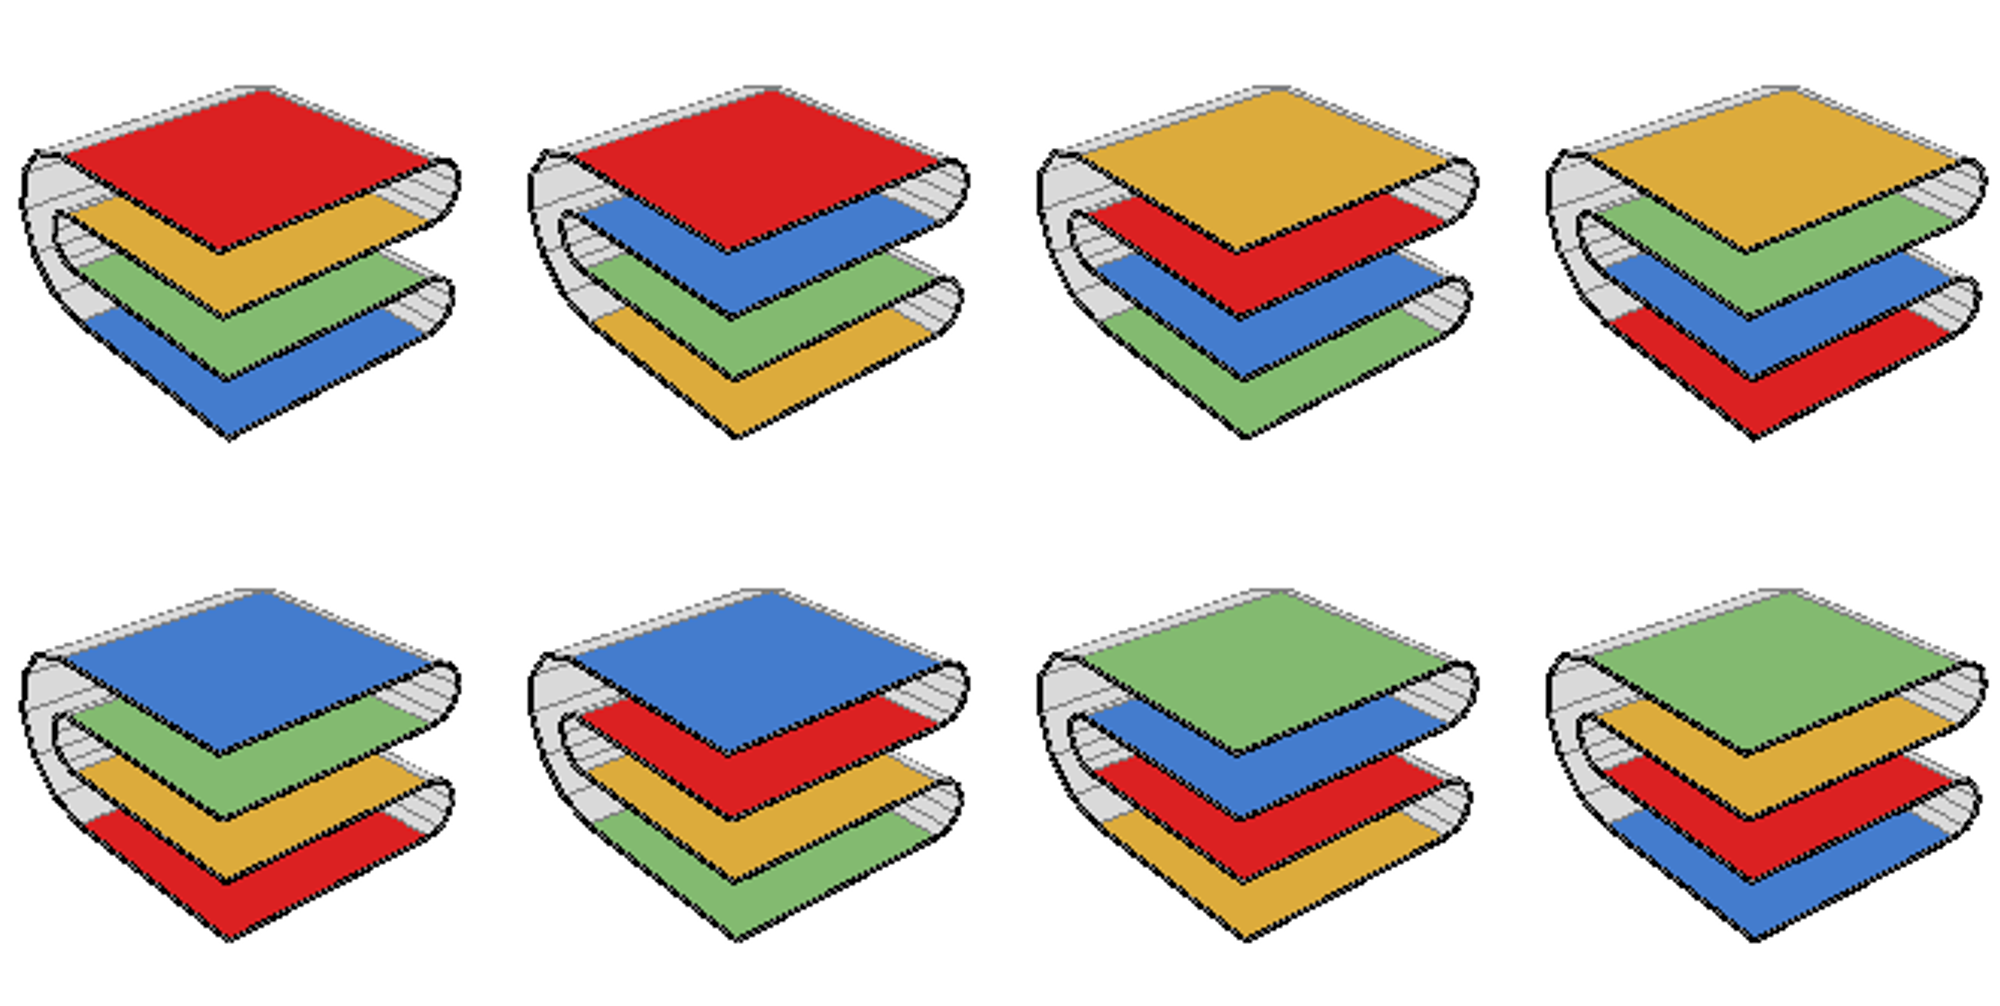 Mathematics of paper folding - Wikipedia